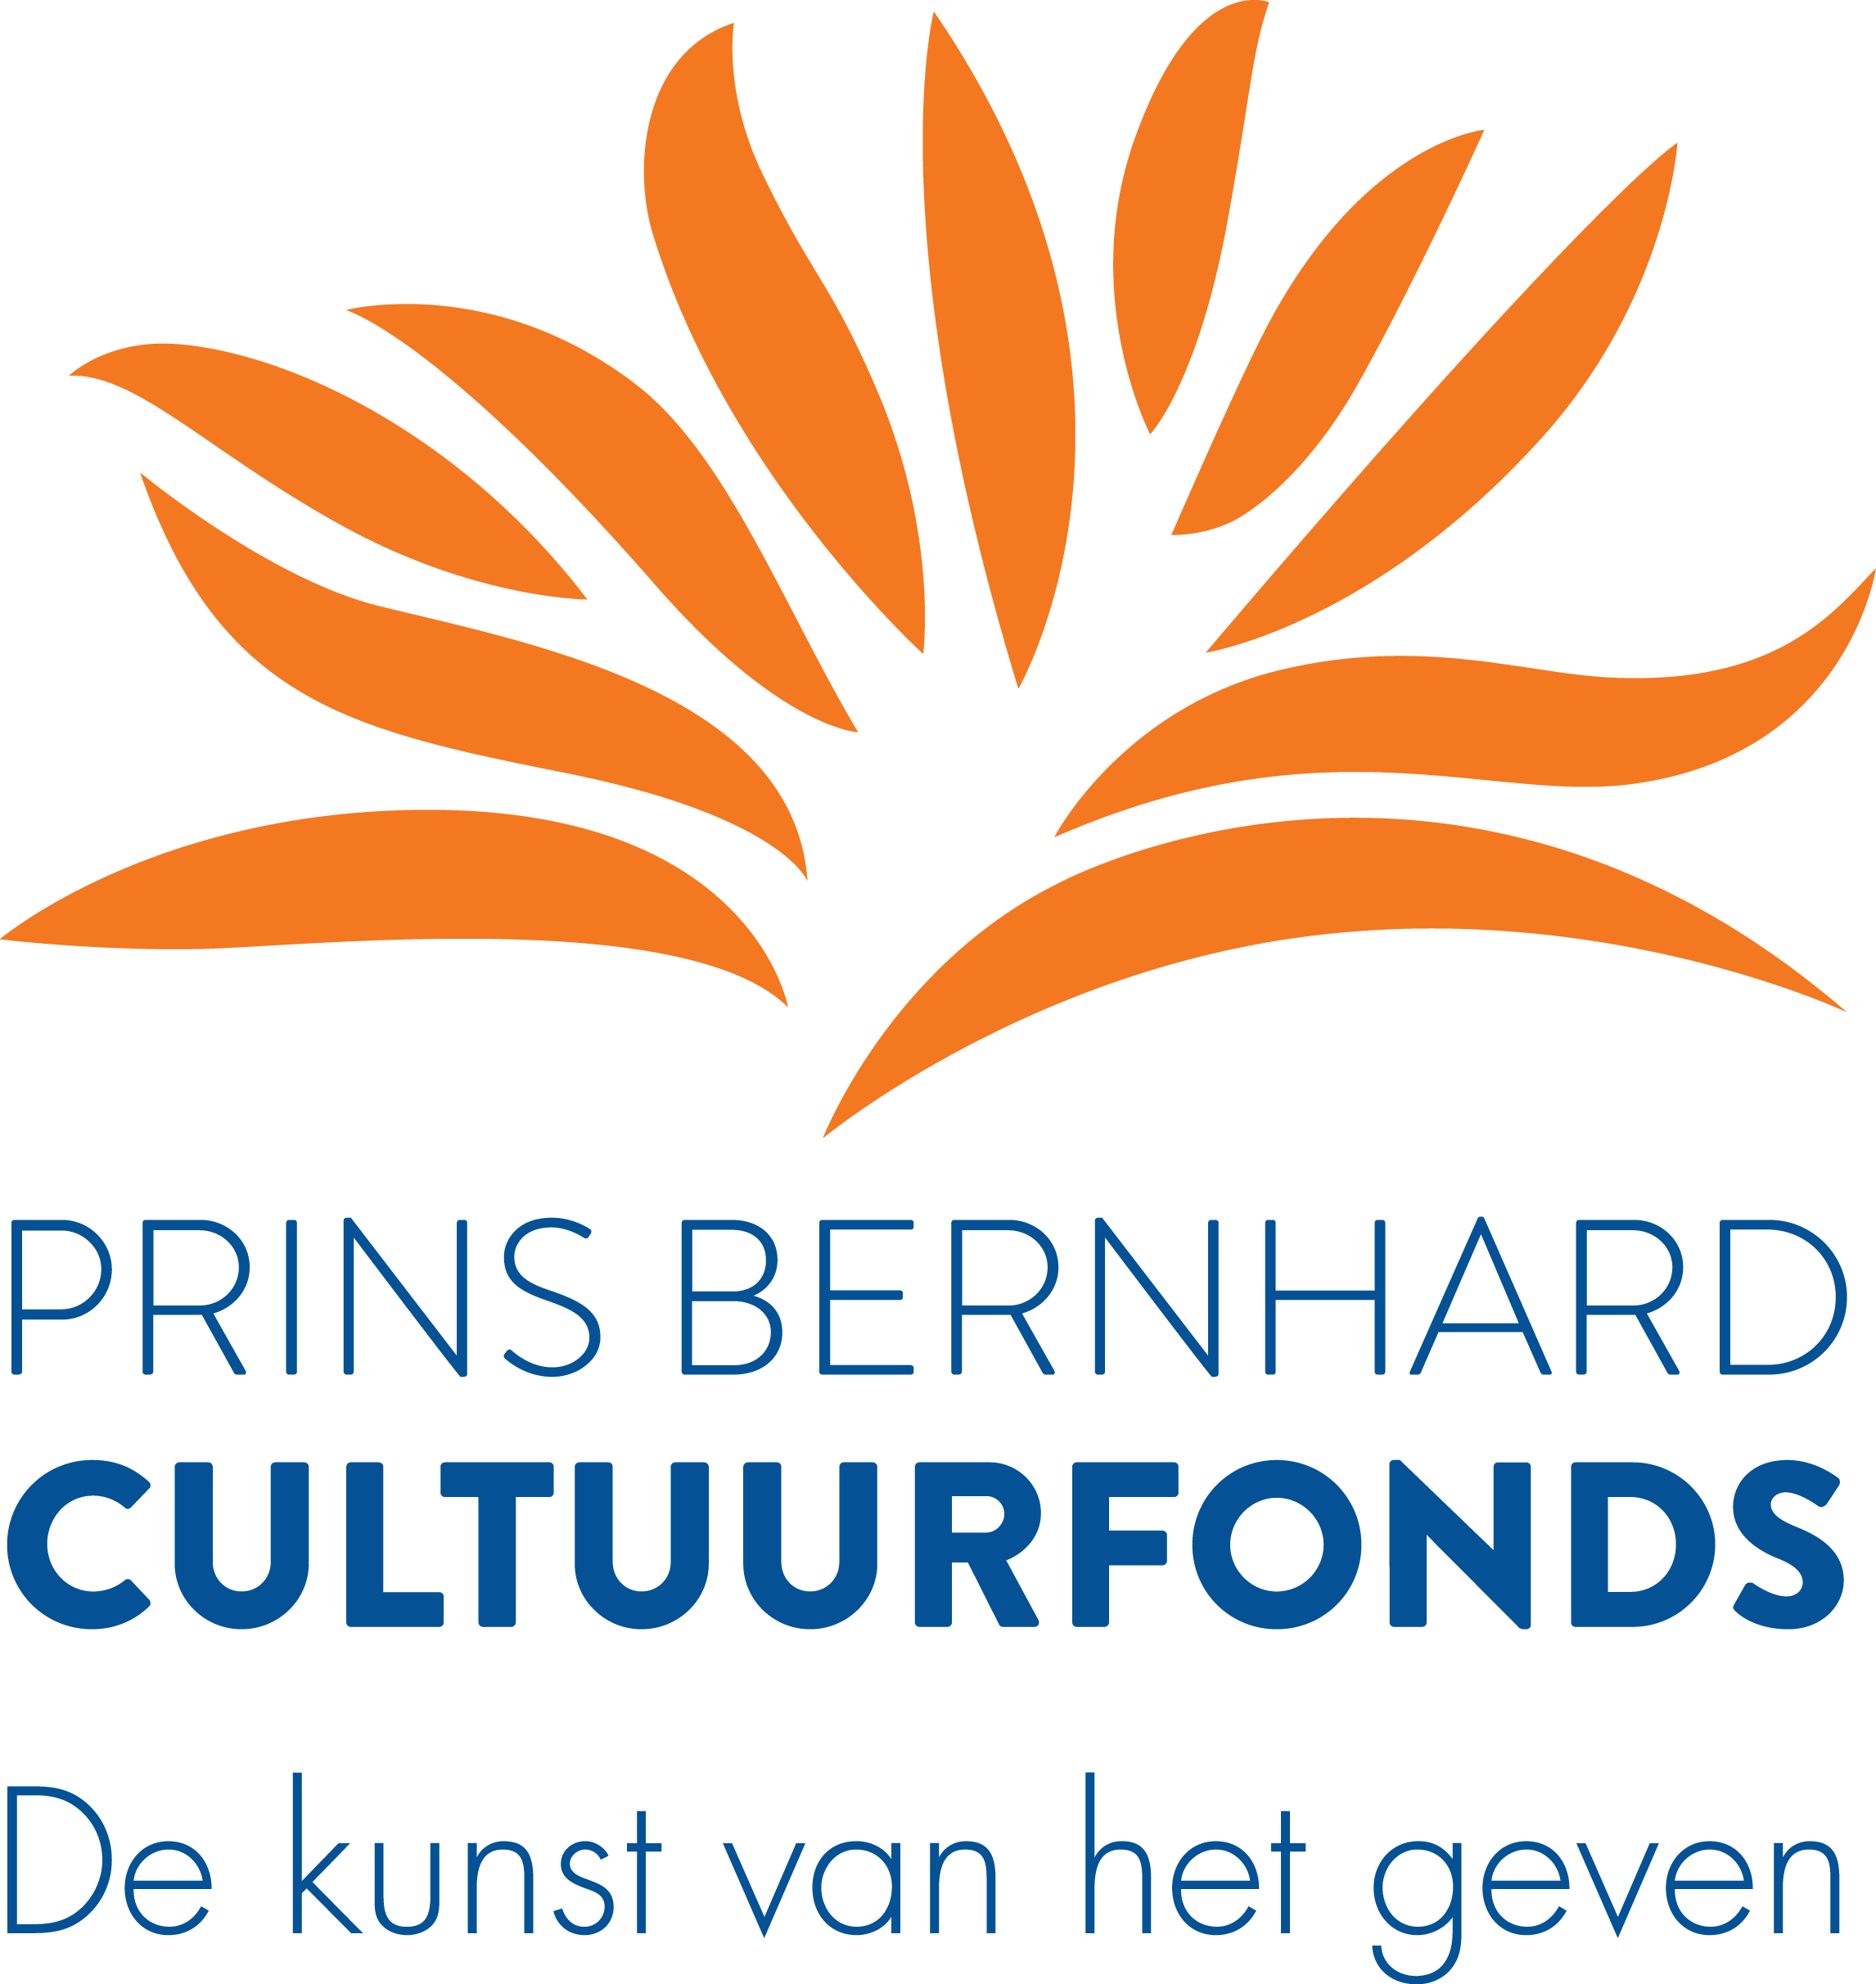 Prins Bernhard Cultuurfonds in sponsor van Kerstavond van Sprokkehorst IJsselstein